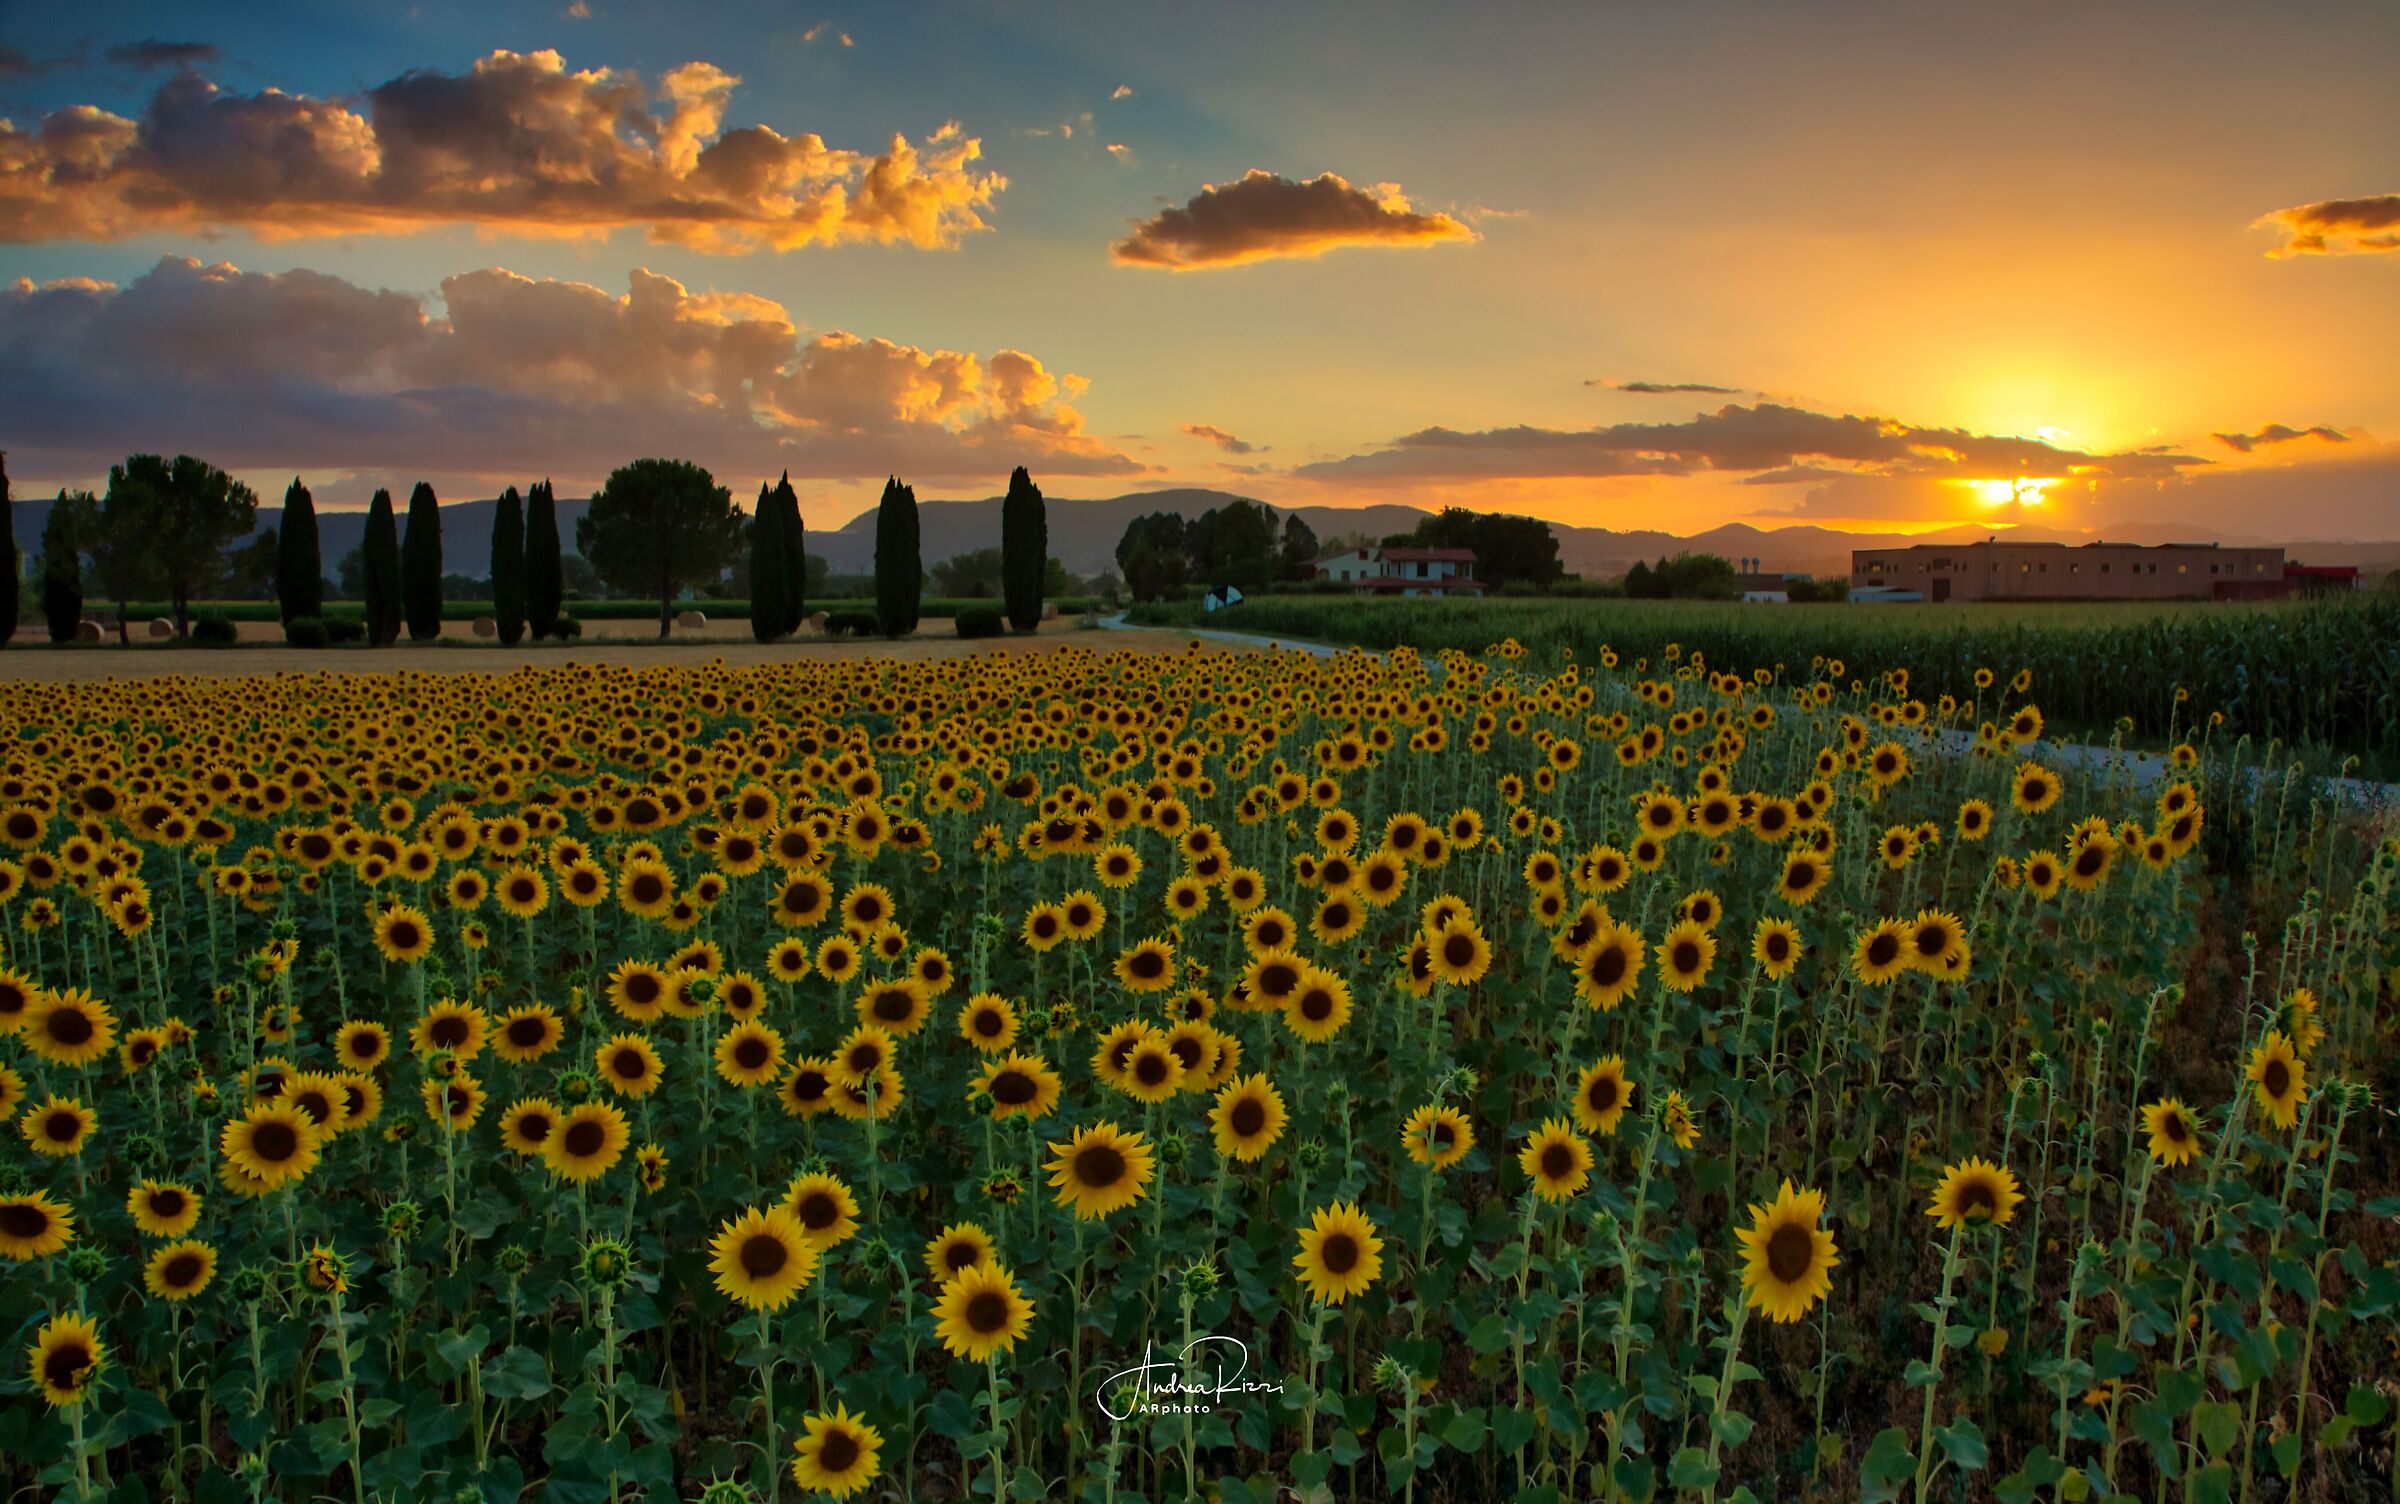 Sunset &sunflowers ...